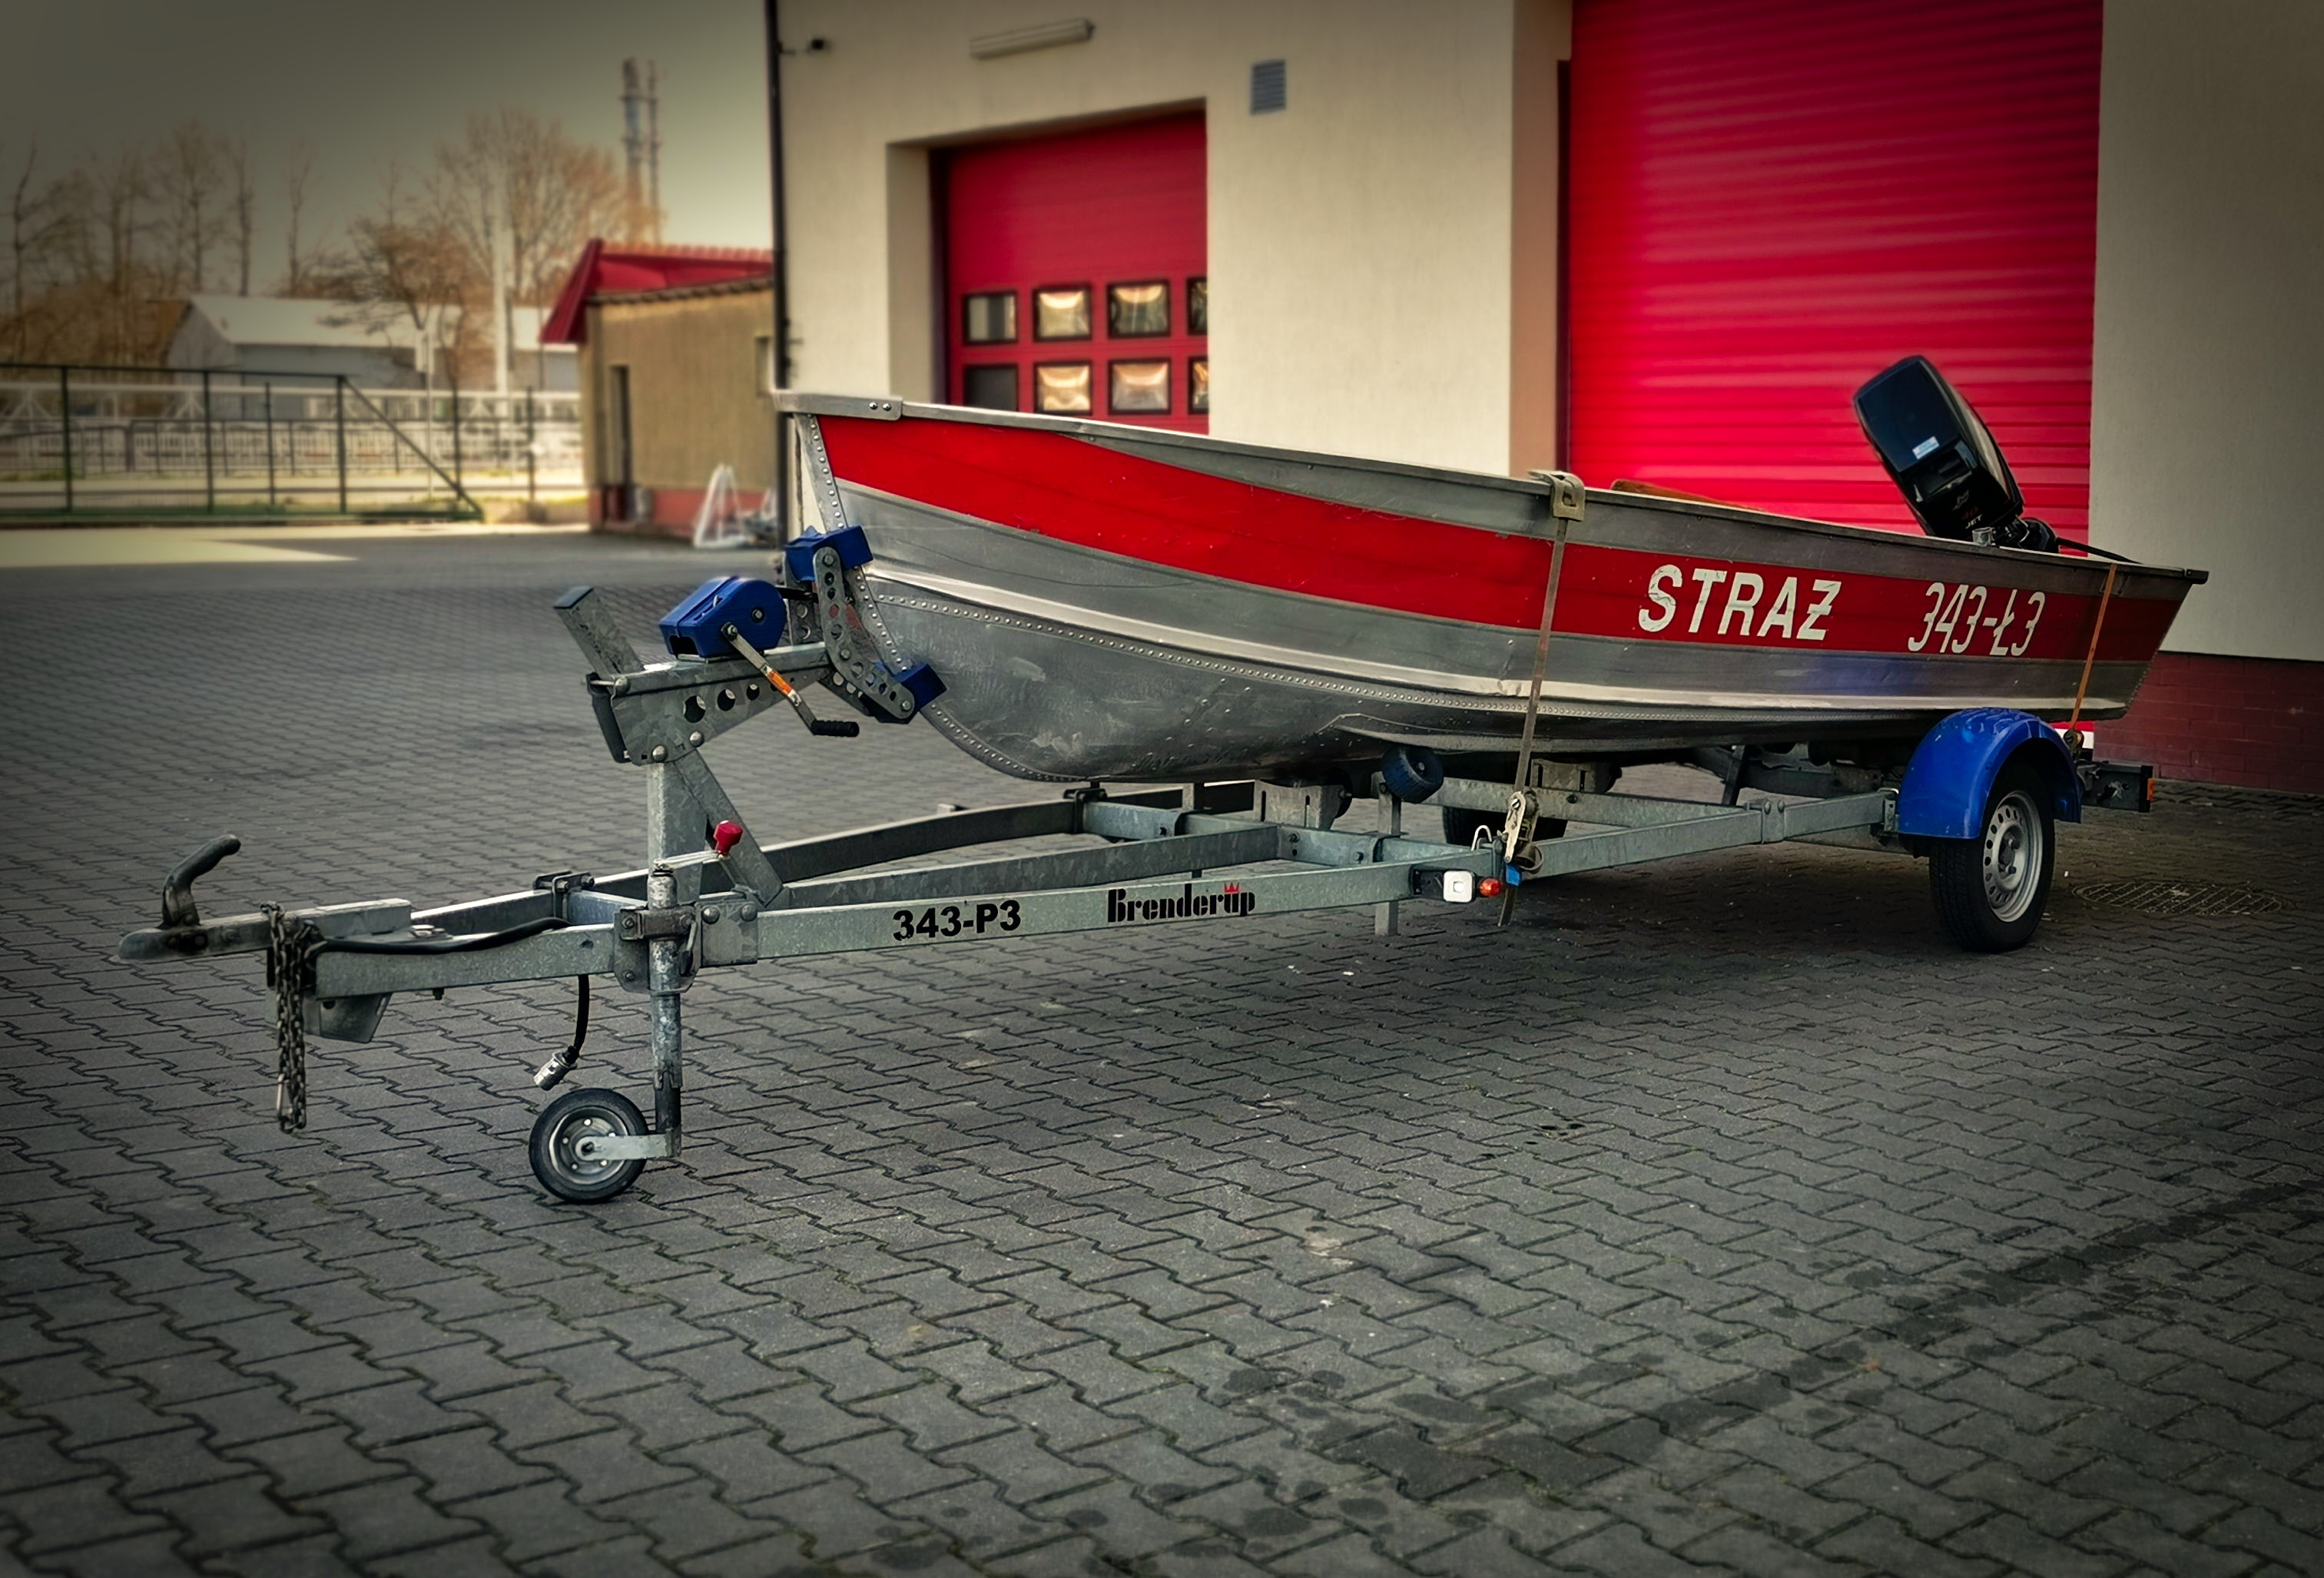 Ł3 łódź aluminiowa QuickSilver Seria 500 SF, Silnik 30kW napęd strugowy, 6 osób. Na przyczepce P3. Masa całkowita każdej przyczepki 750kg.